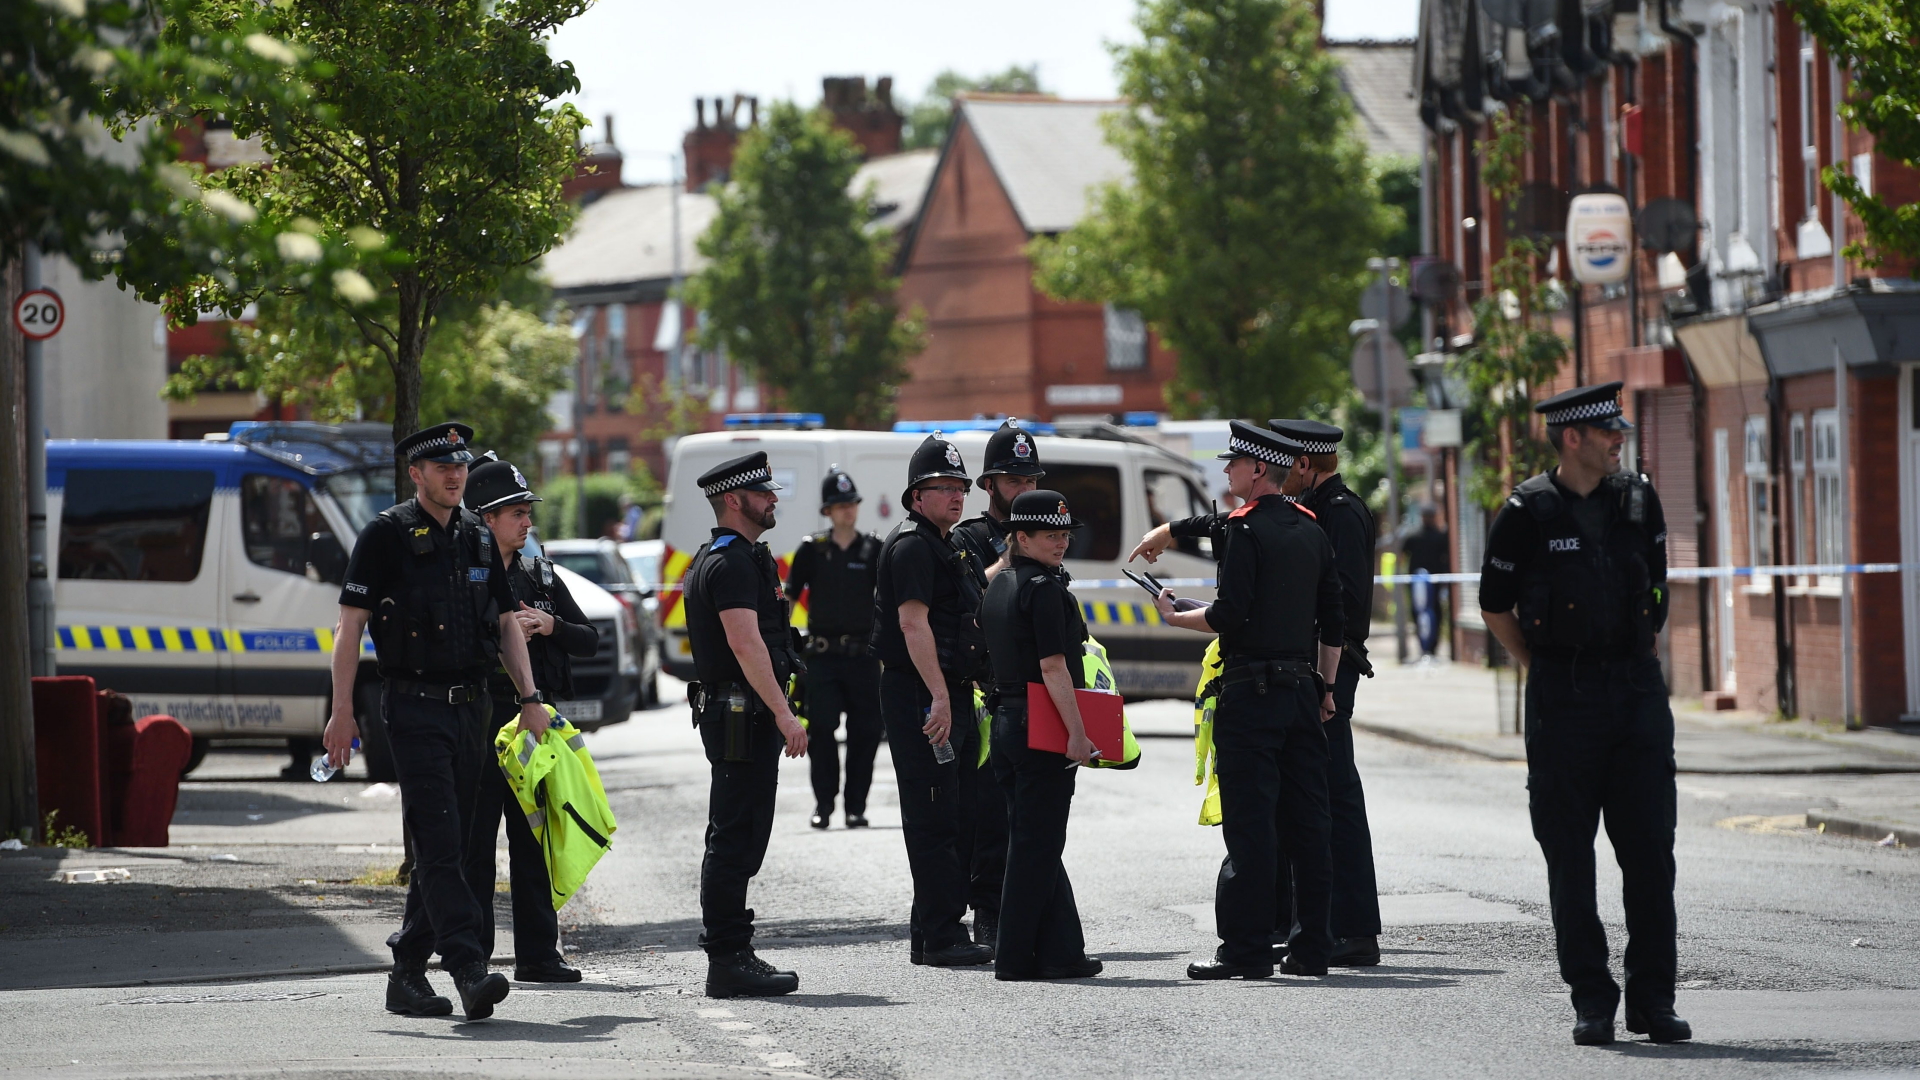 Polizisten stehen während eines Einsatzes auf einer Straße in Manchester. | Bildquelle: AFP